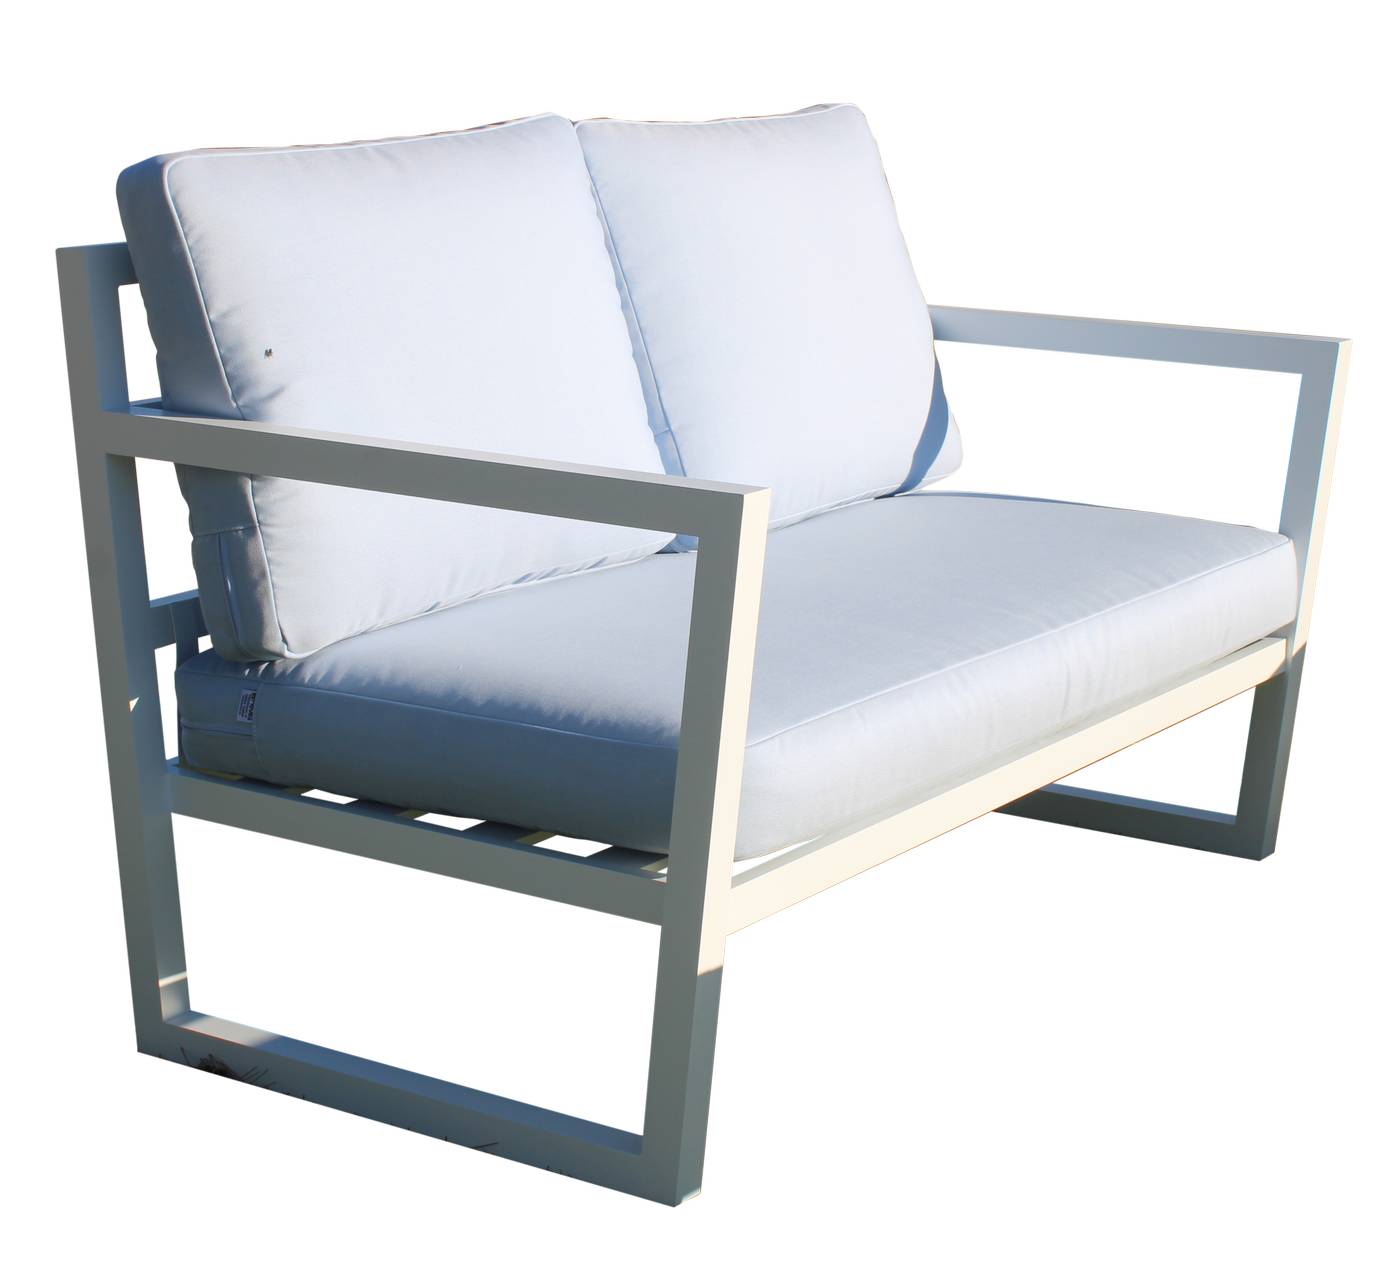 Sofá relax 2 plazas de aluminio para exterior. Disponible en cinco colores diferentes.